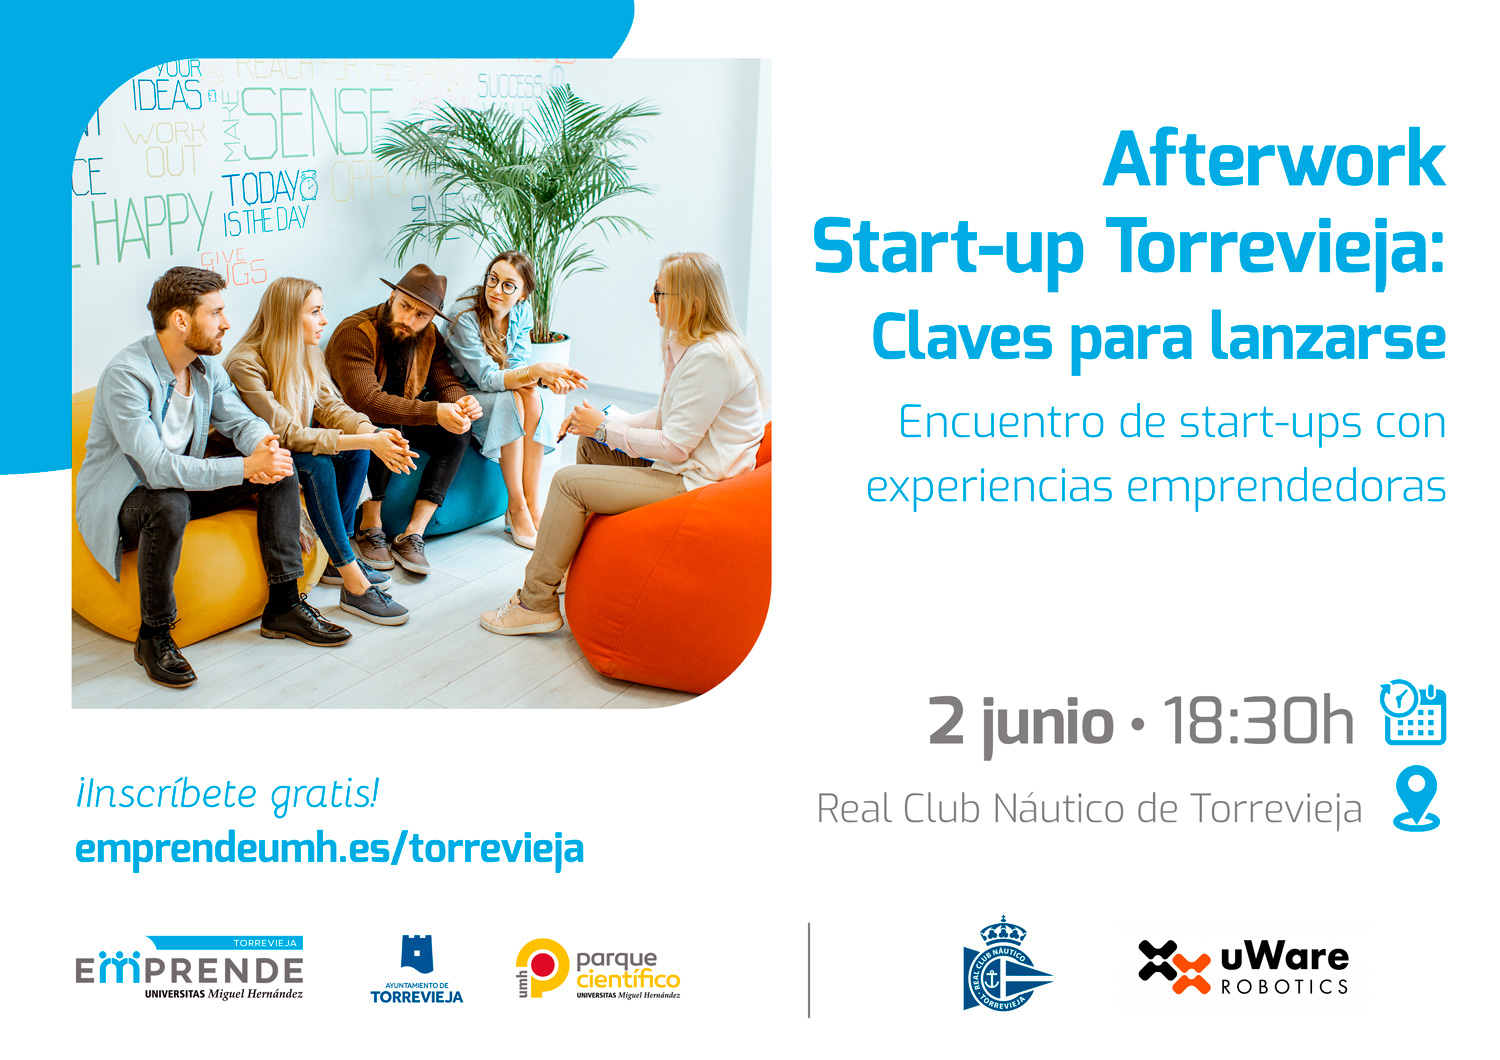 Lee más sobre el artículo Afterwork start-up Torrevieja: construyendo un ecosistema innovador